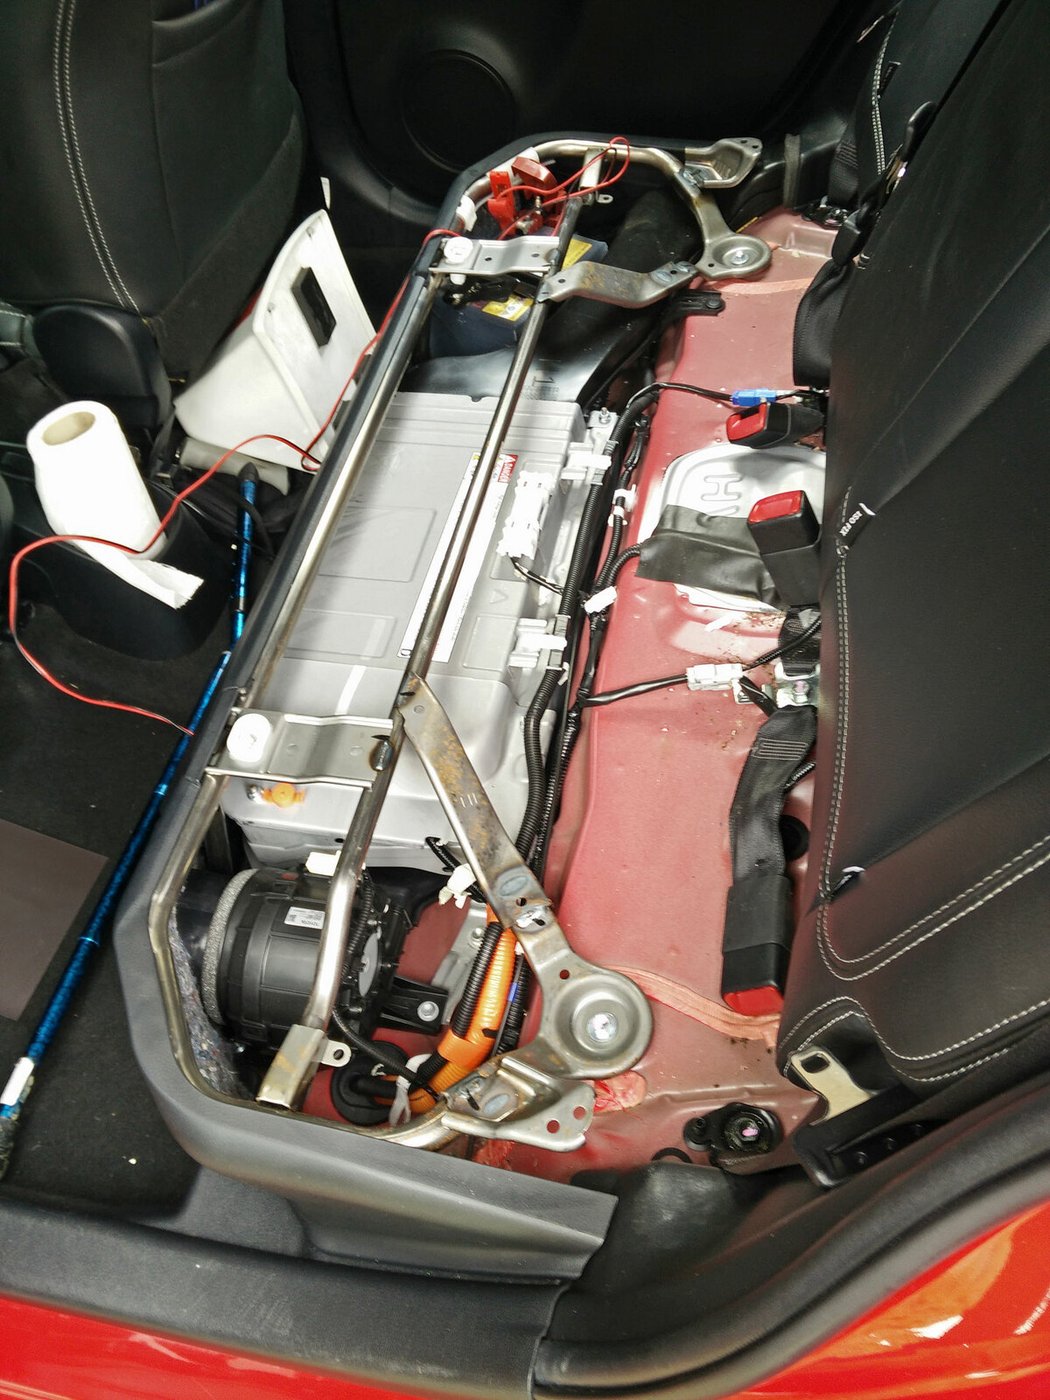 Trakční baterie NiMH hybridního yarisu se ukrývá pod zadní sedačkou. Toyota na ni dává záruku 10 let, dle zkušeností z priusu se zájemci o ojeté yarisy nemusí bát výrazného poklesu kapacity.